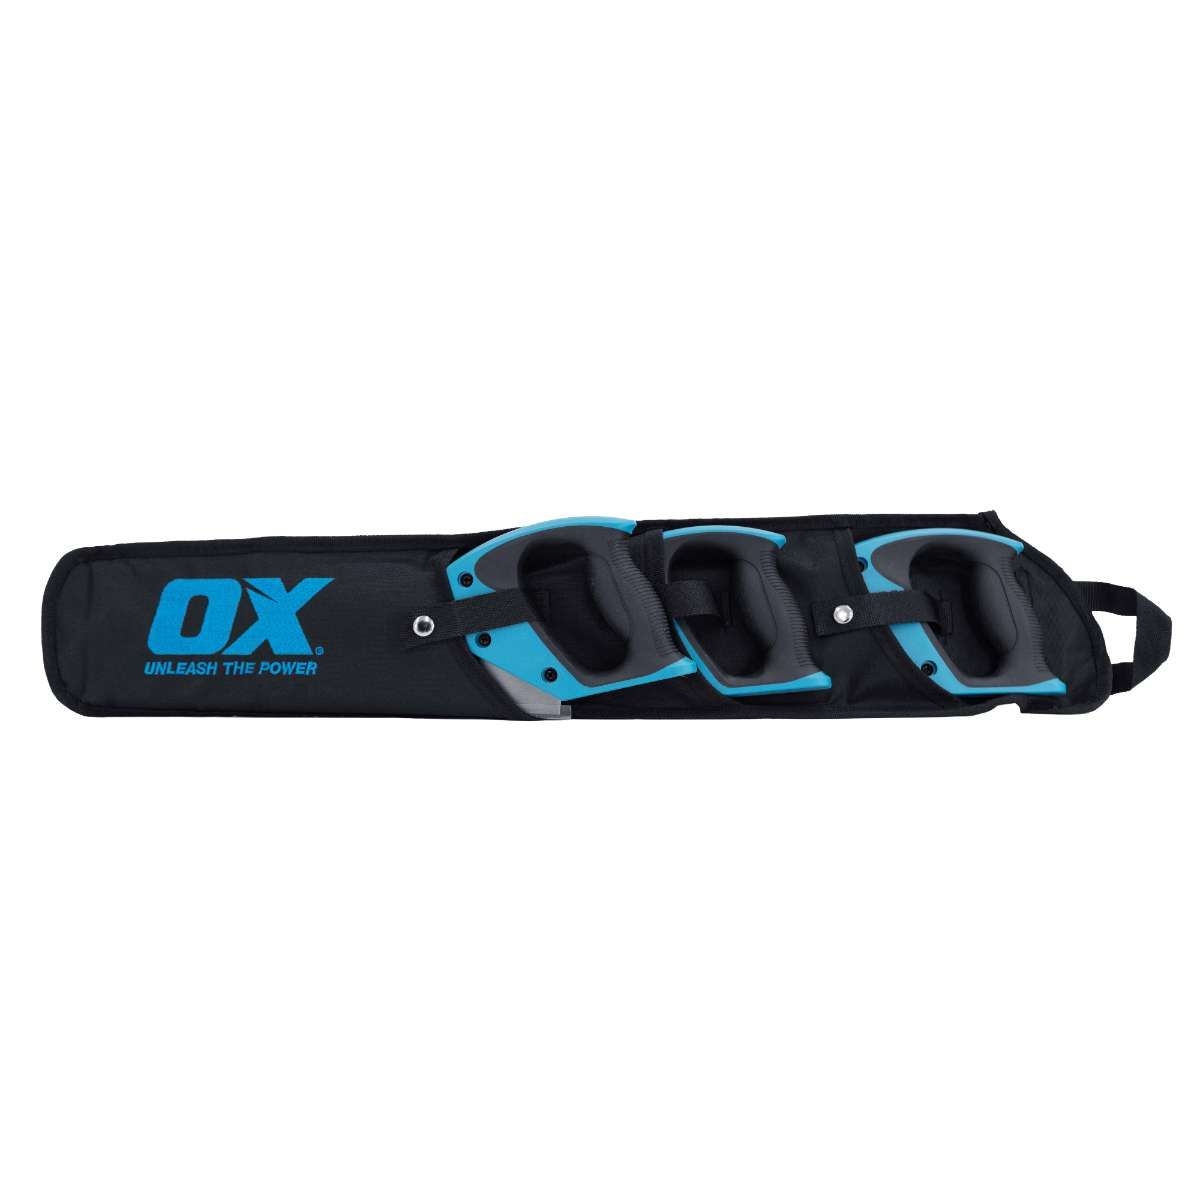 OX Pro 3-Piece Handsaw Kit